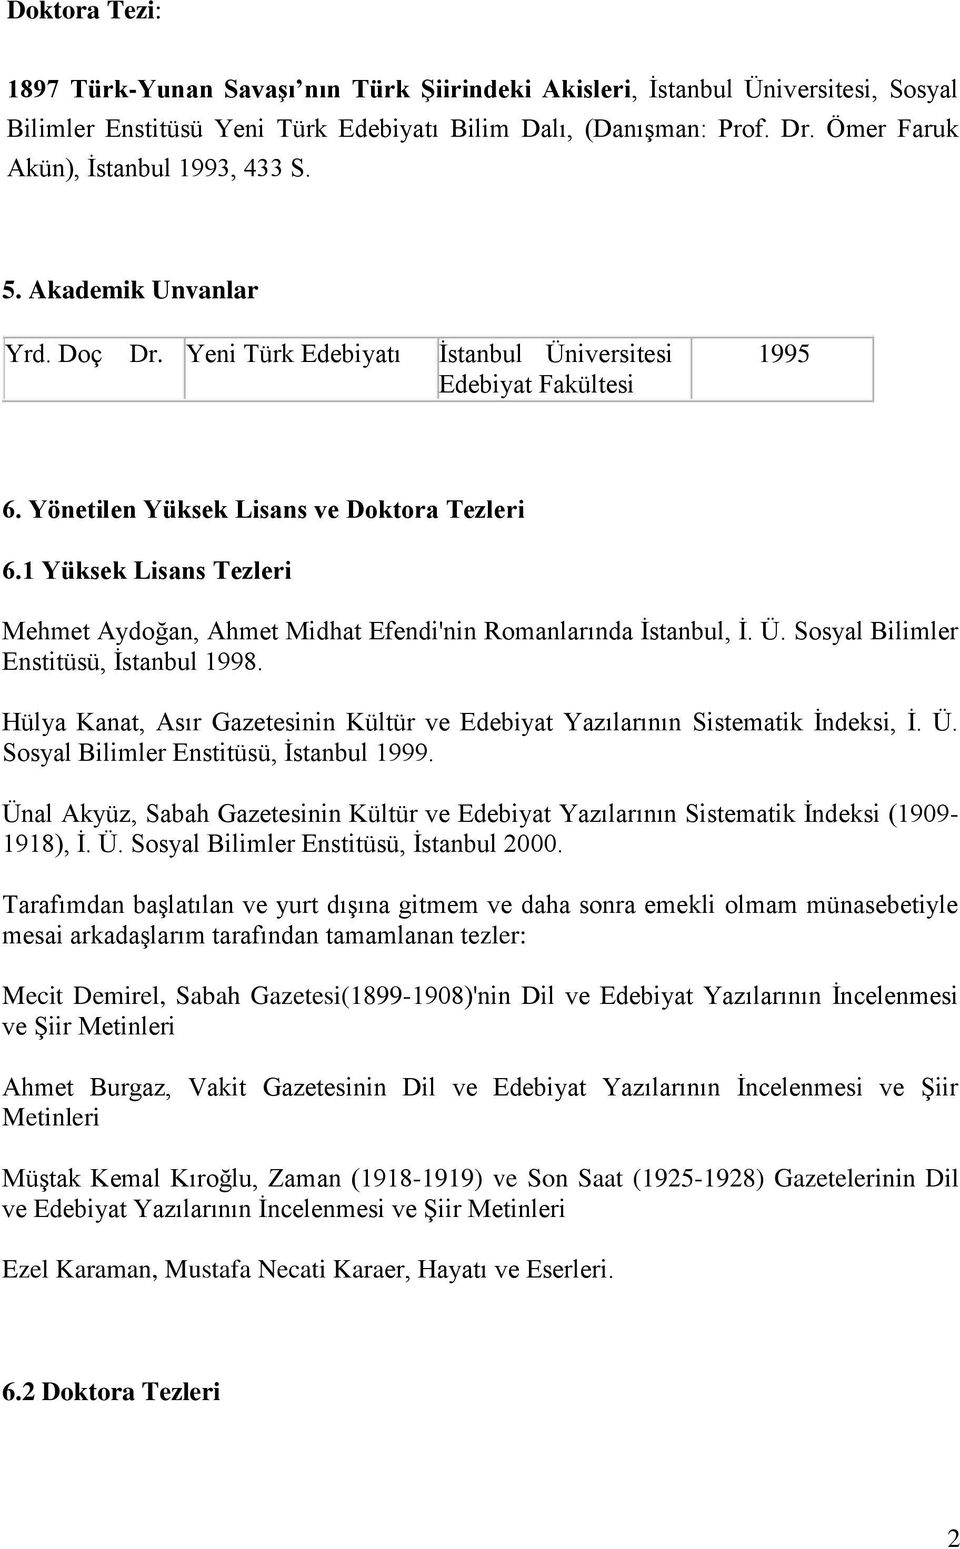 1 Yüksek Lisans Tezleri Mehmet Aydoğan, Ahmet Midhat Efendi'nin Romanlarında İstanbul, İ. Ü. Sosyal Bilimler Enstitüsü, İstanbul 1998.